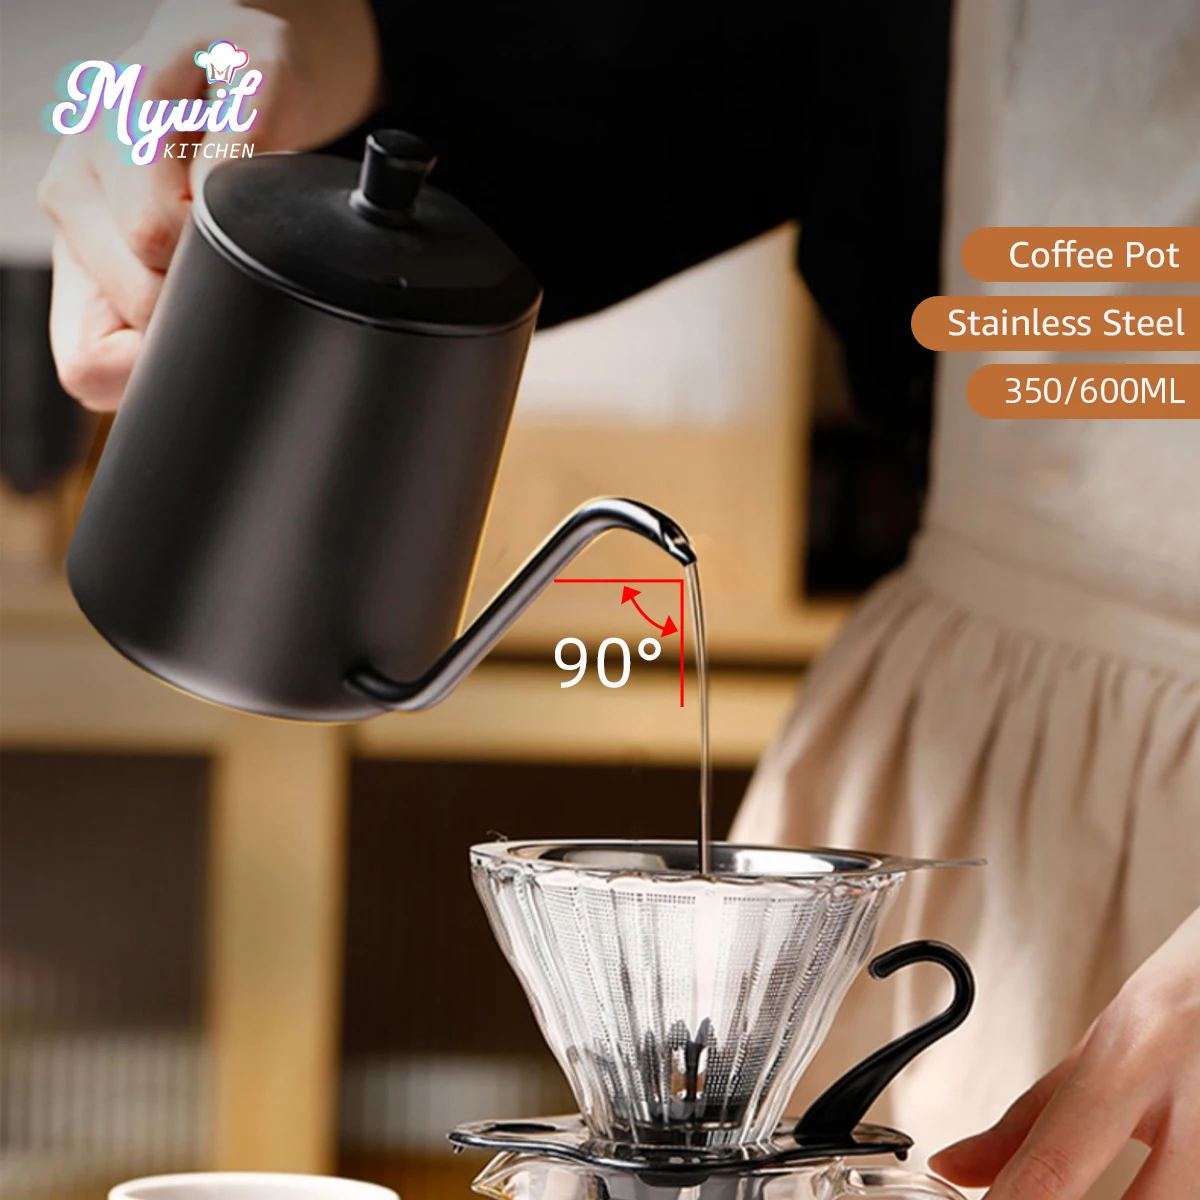 https://ae01.alicdn.com/kf/S3671708c31424b72a8ec0bf1a5619527e/Pour-Over-Coffee-Kettle-12-Oz-Hand-Punch-Pot-Coffee-Pot-Drip-Gooseneck-Spout-Long-Mouth.jpg